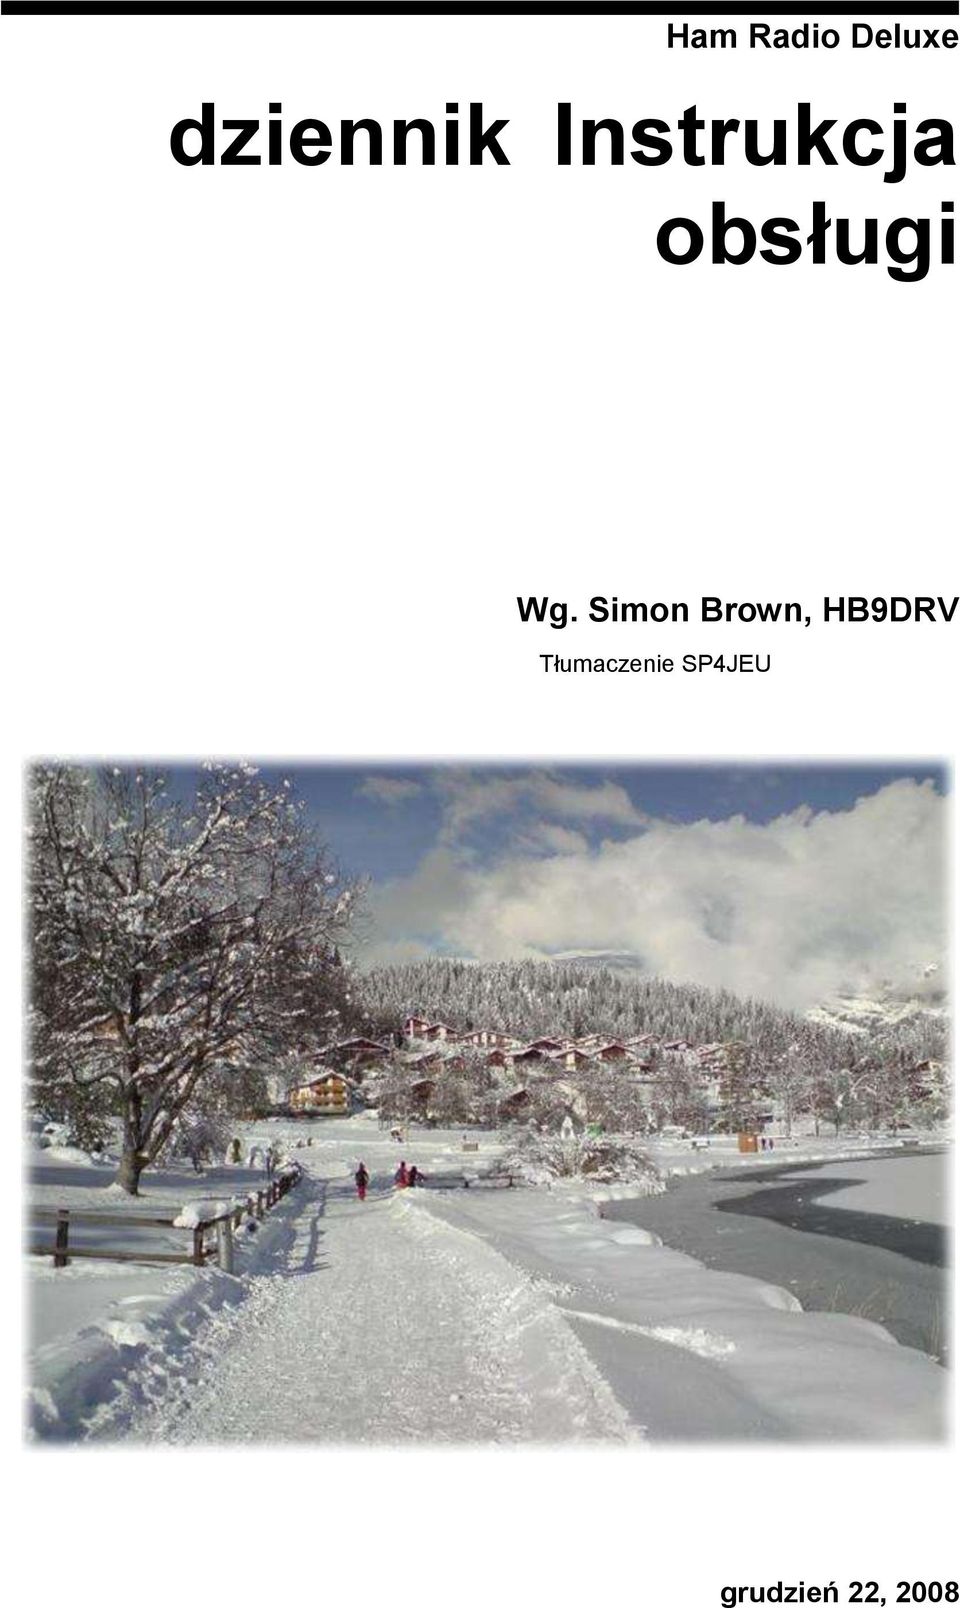 Simon Brown, HB9DRV